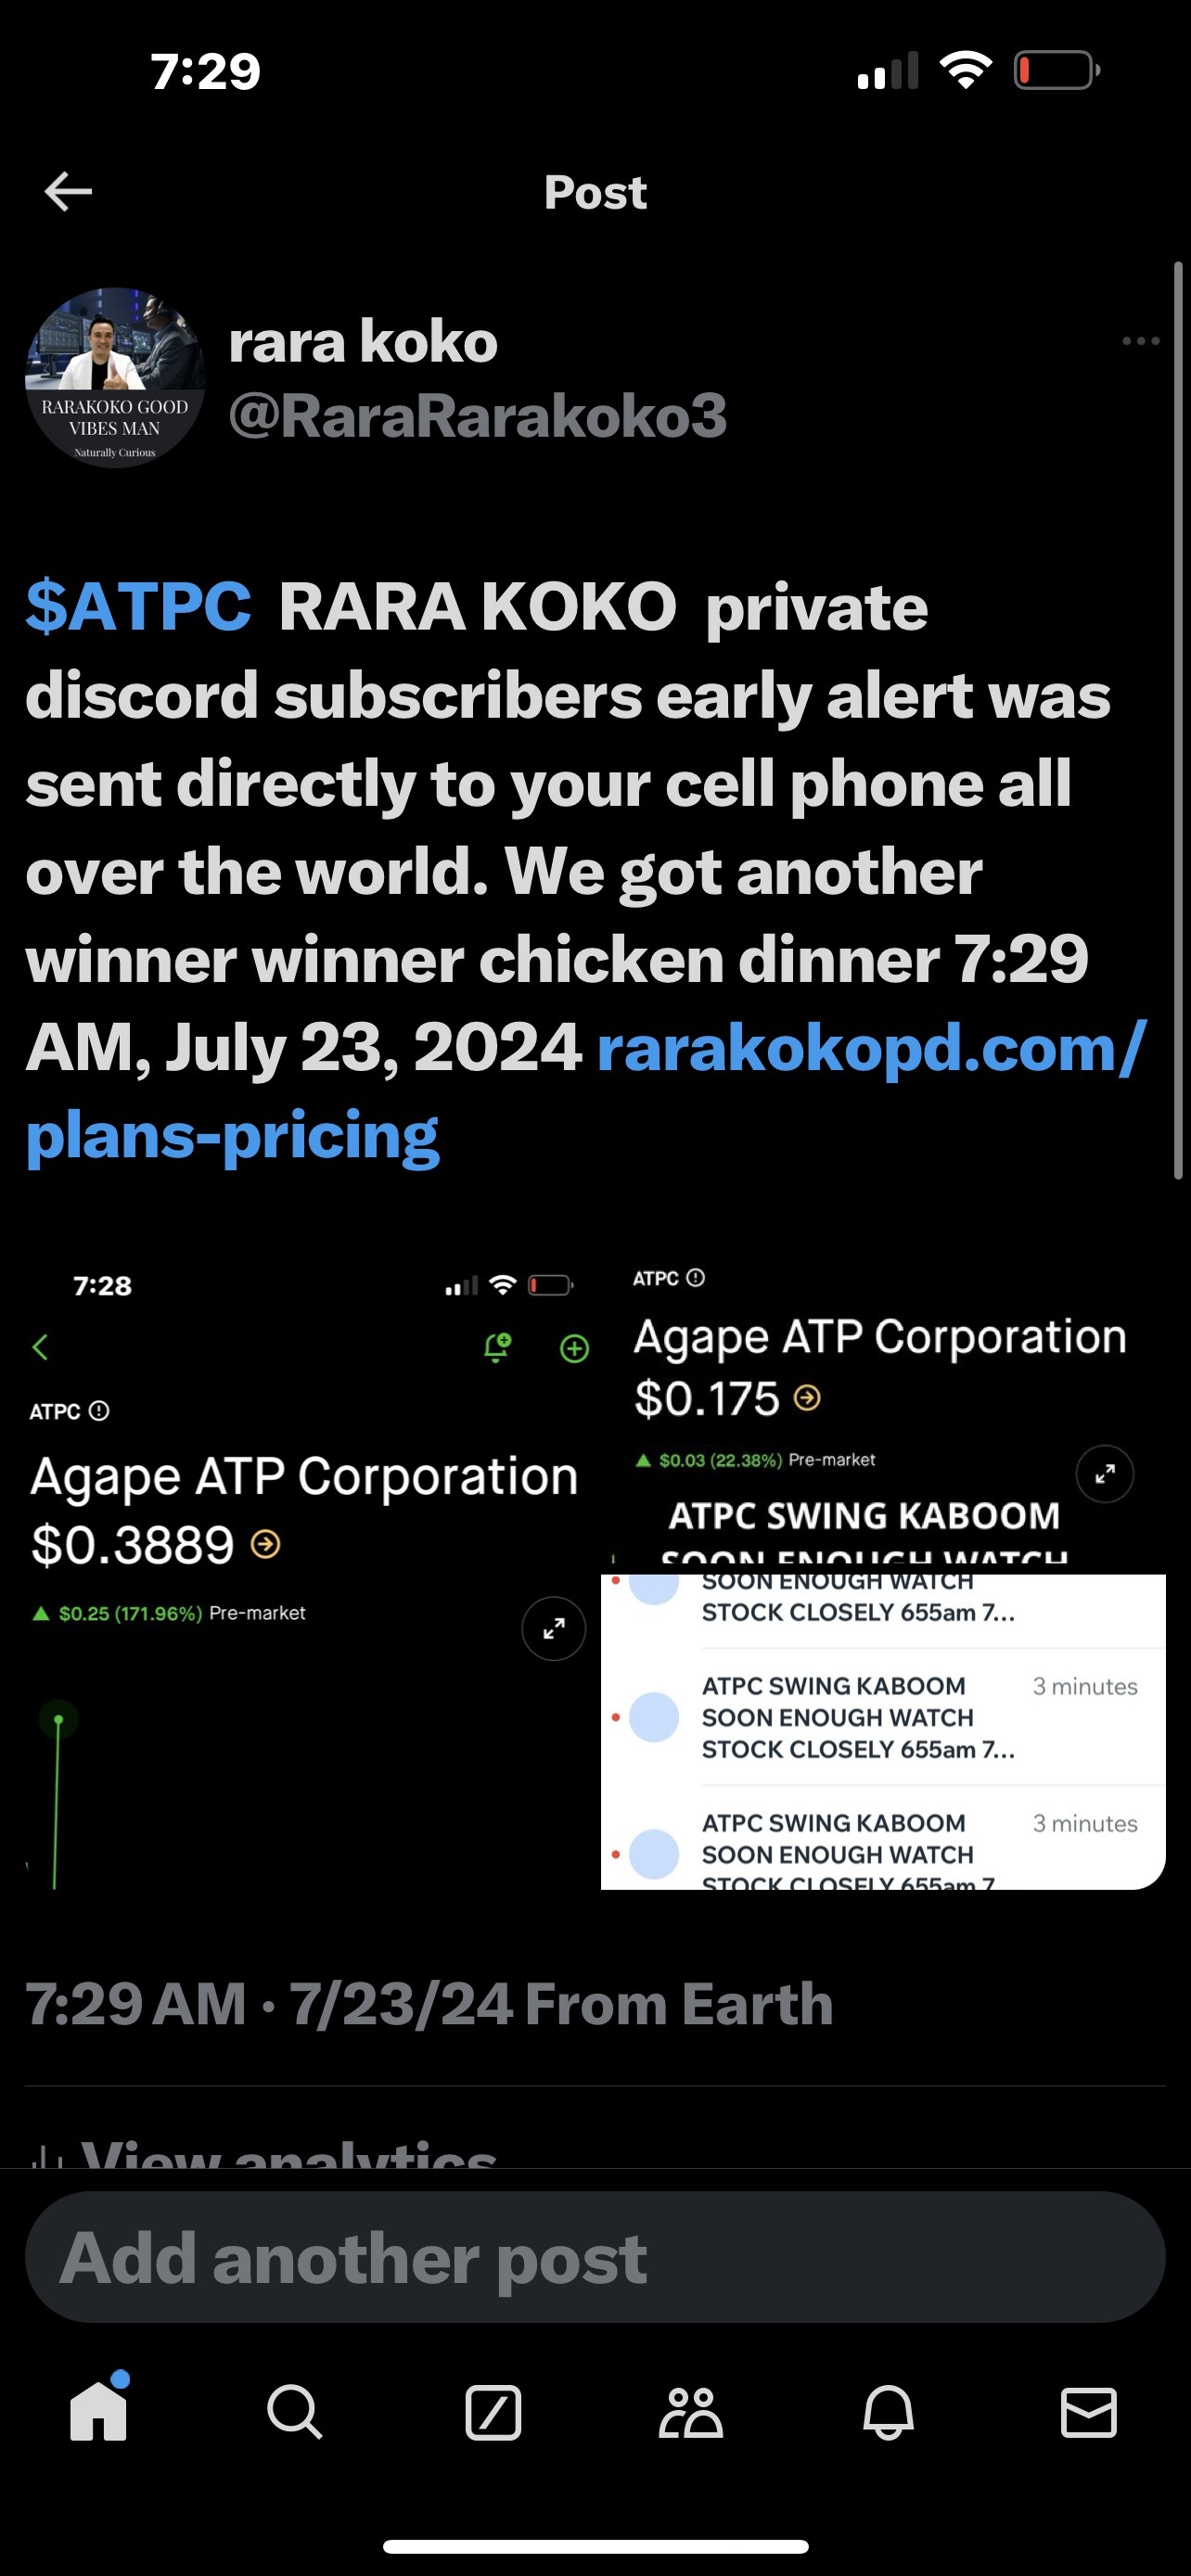 $ATPC RARA KOKO 私人異常訂戶的早期警報已直接發送到世界各地的手機。2024 年 7 月 23 日上午 7 時 29 分，我們還有另一個獲勝者雞肉晚餐 rarakokopd.com/pla